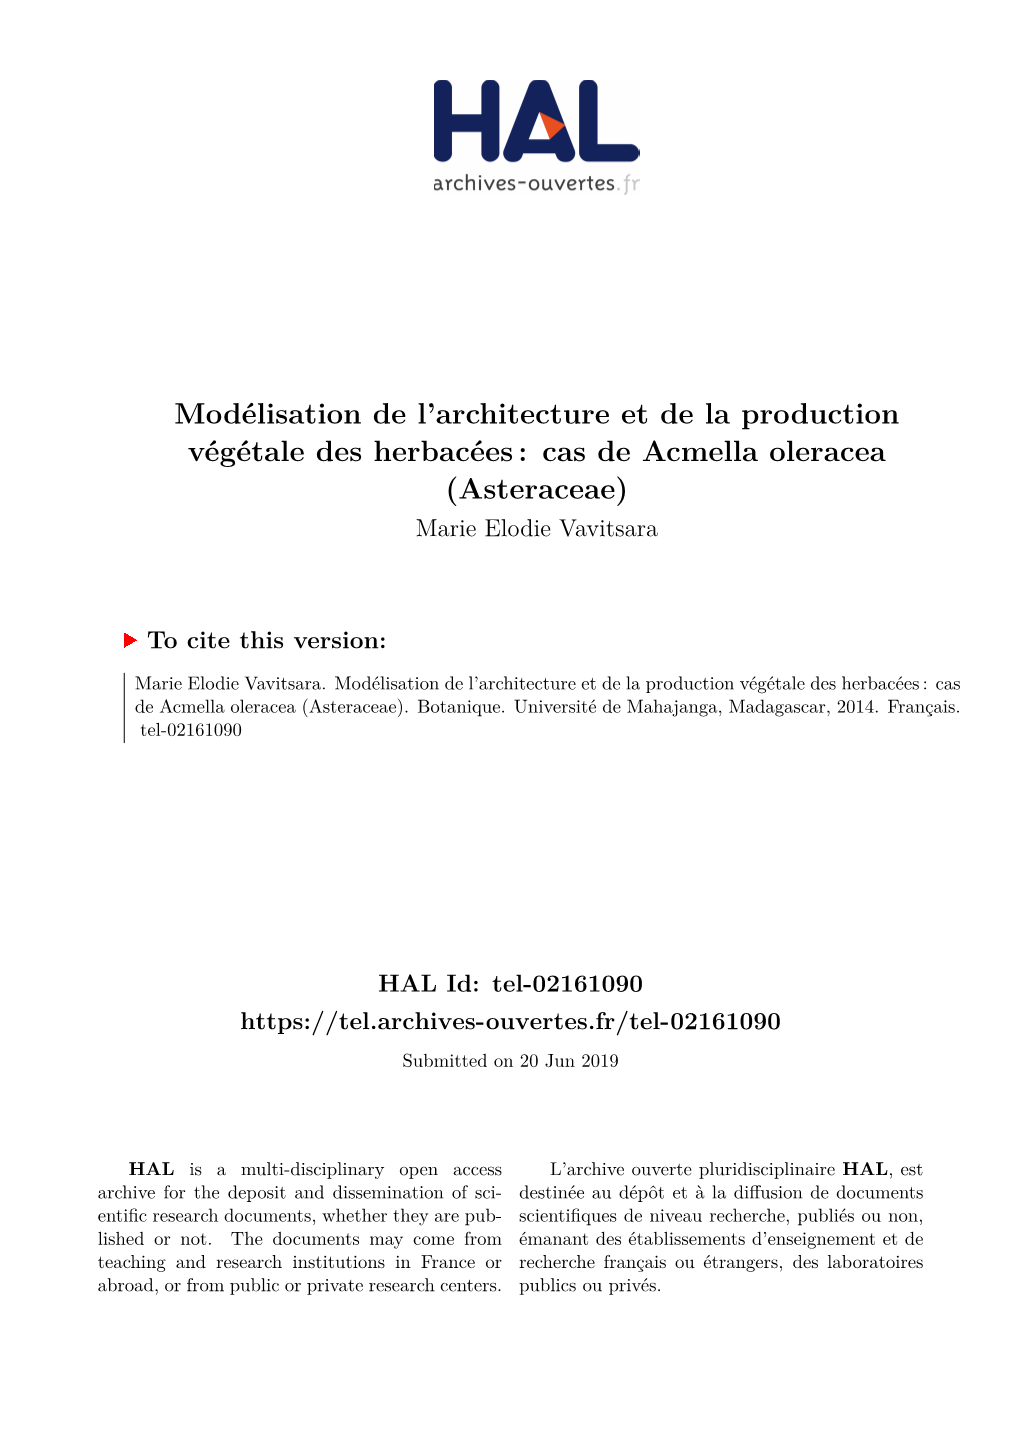 Modélisation De L'architecture Et De La Production Végétale Des Herbacées: Cas De Acmella Oleracea (Asteraceae)